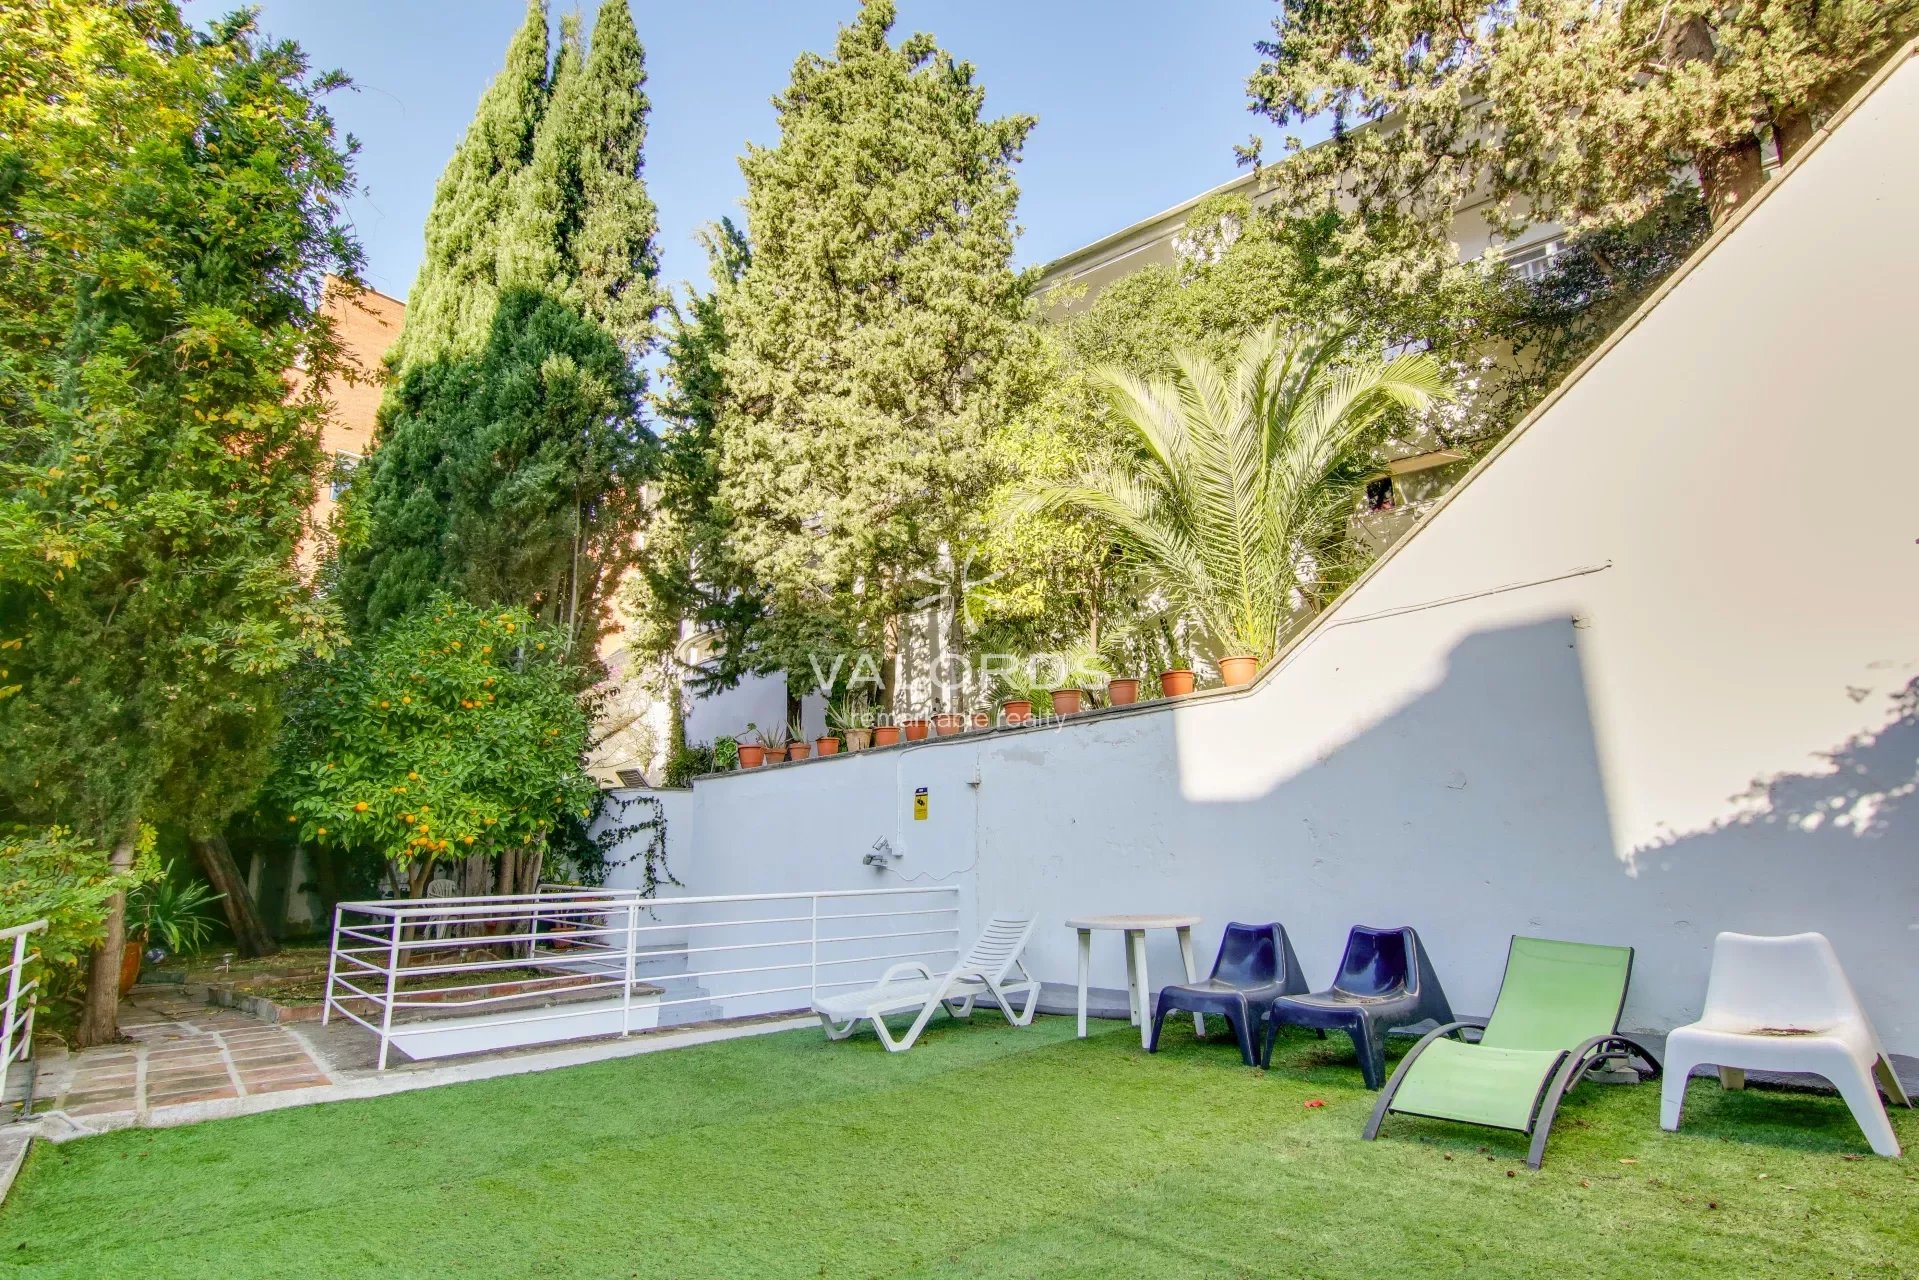 Barcelone - Gracia - Maison 567 m² avec jardin et piscine - Licence touristique - picture 13 title=